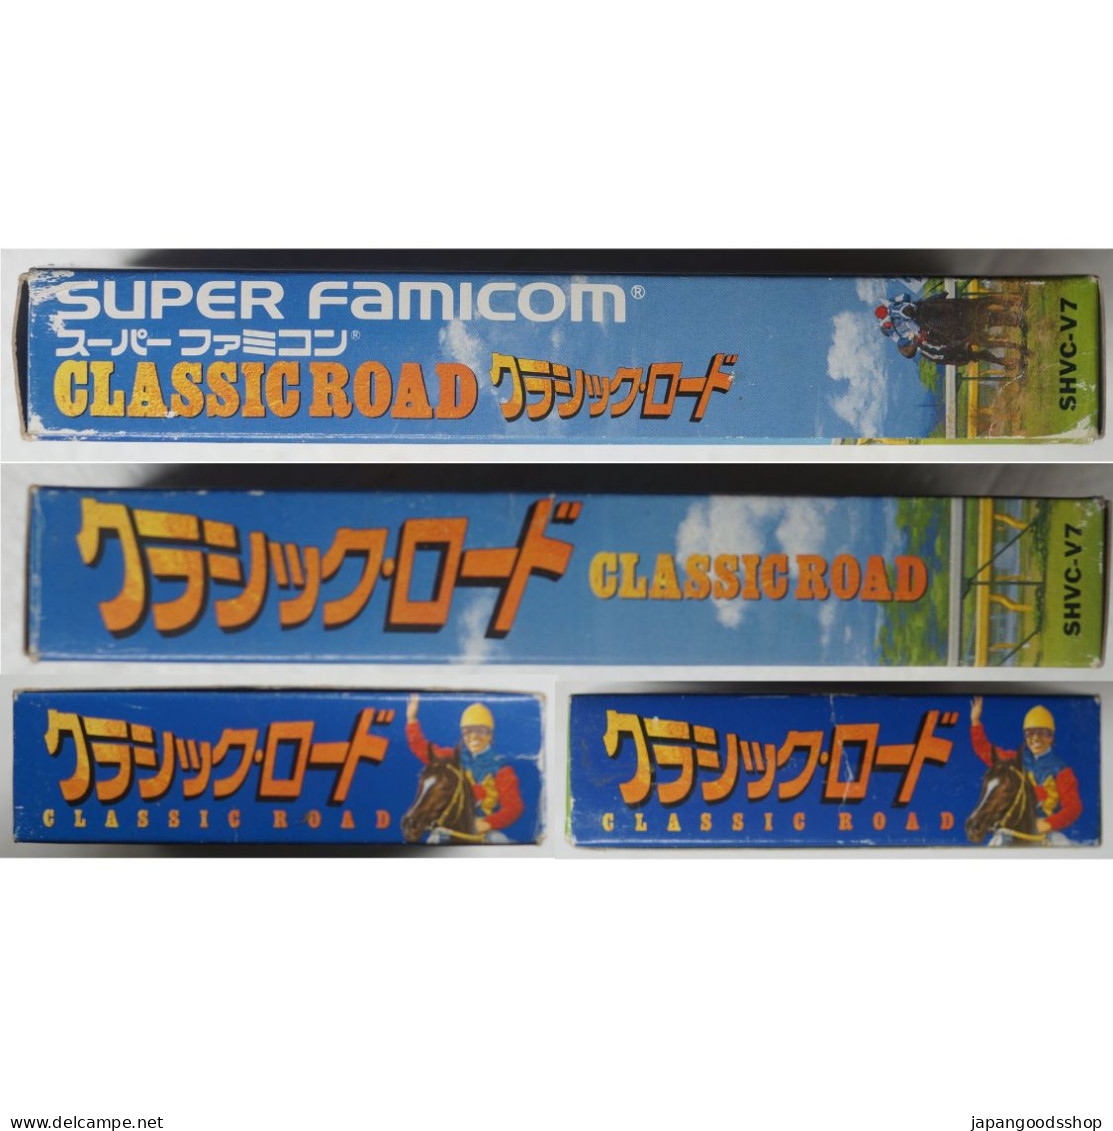 Super Famicom Classic Road SHVC-V7 - Super Famicom